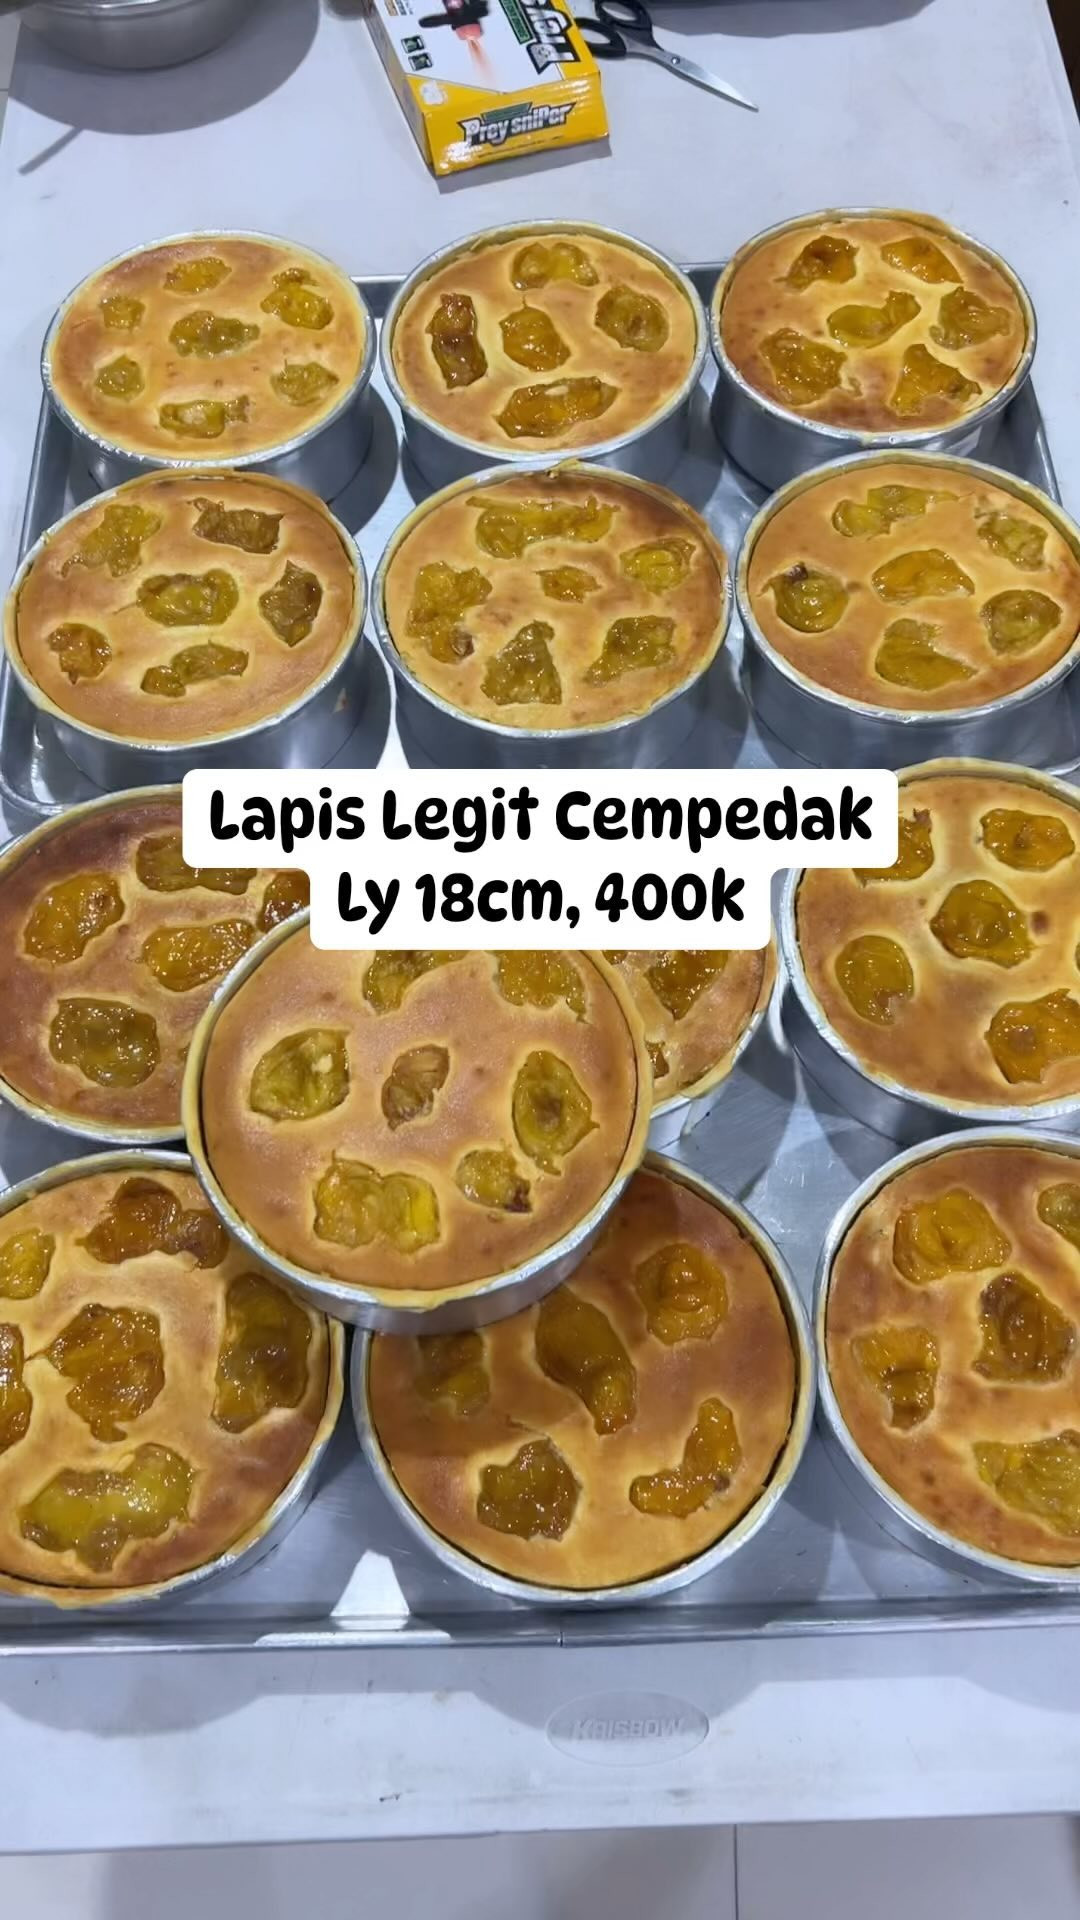 Lapis Legit Cempedak